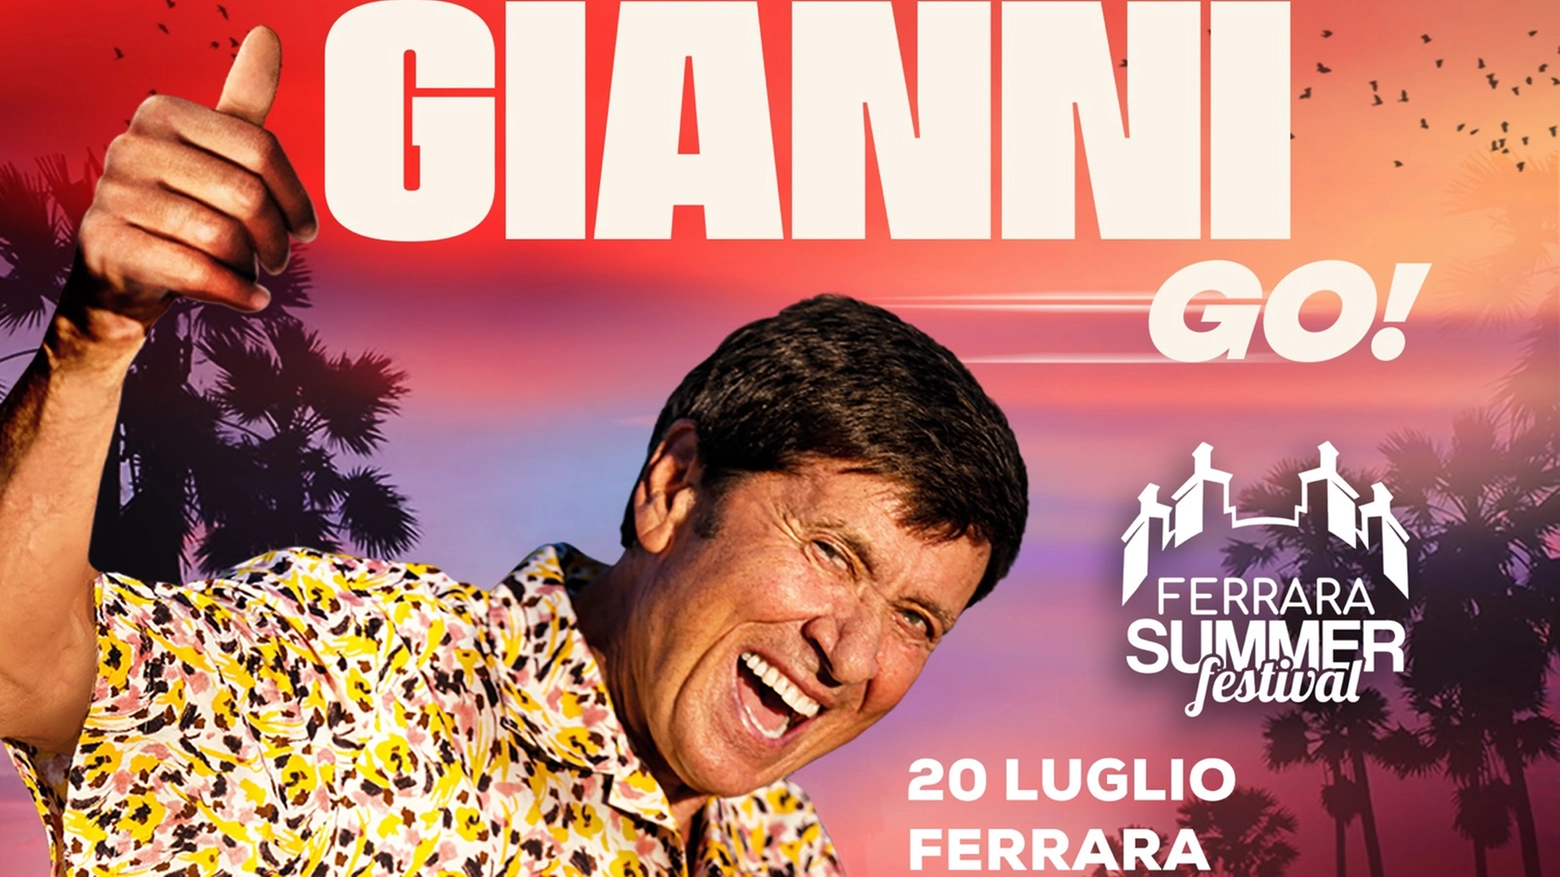 'Gianni Go', al Ferrara Summer Festival il 20 luglio